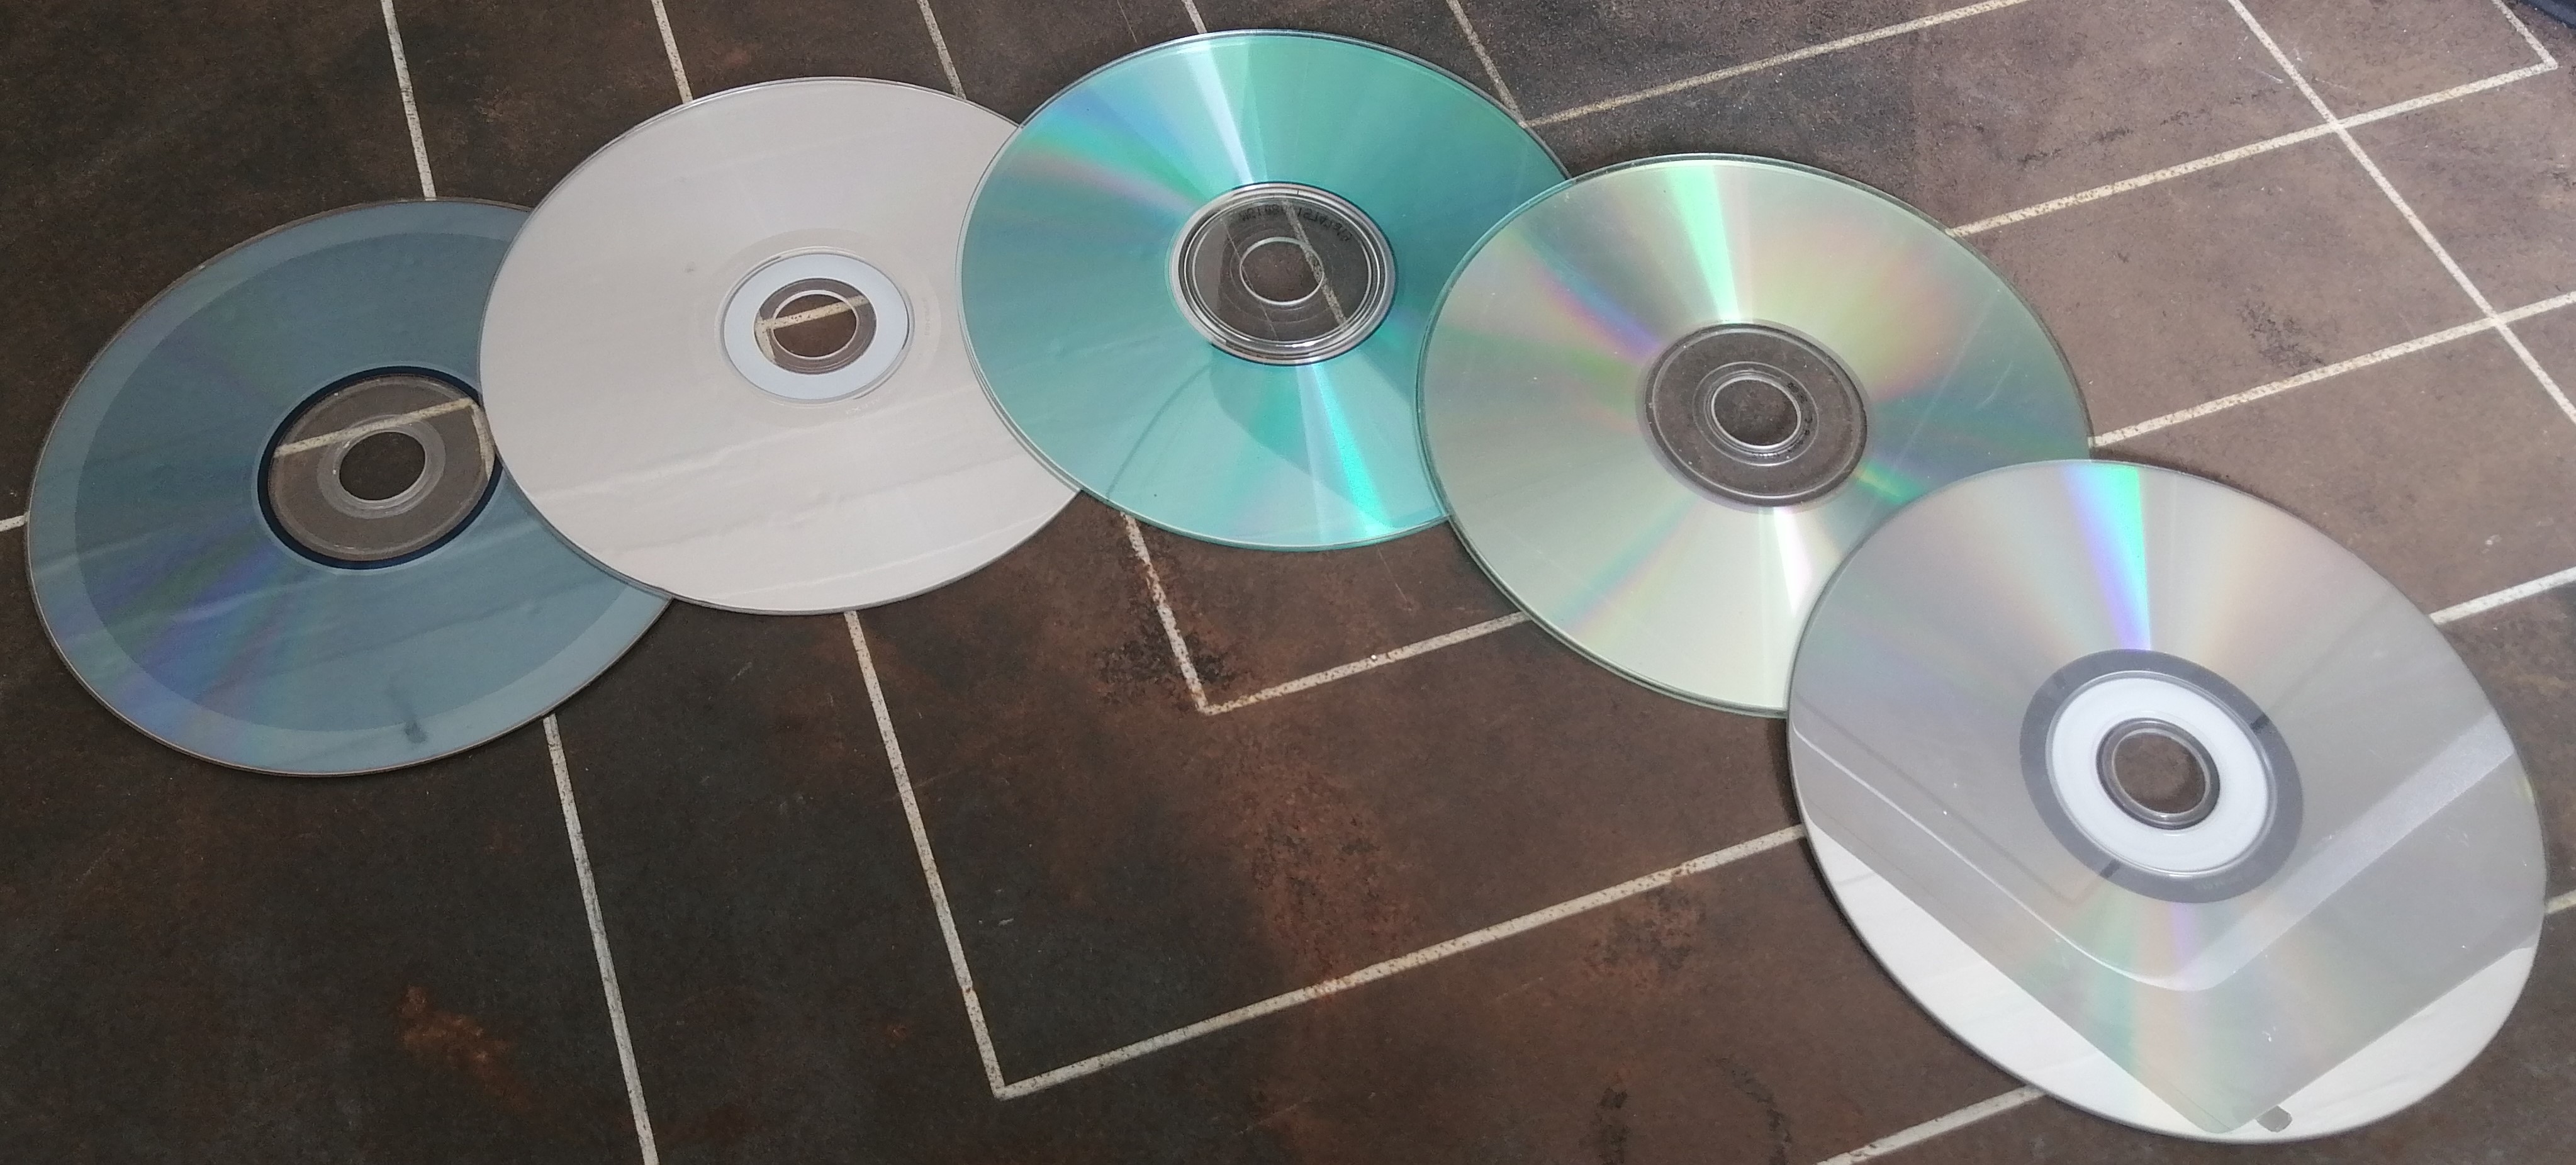 OLD CD DVD disks